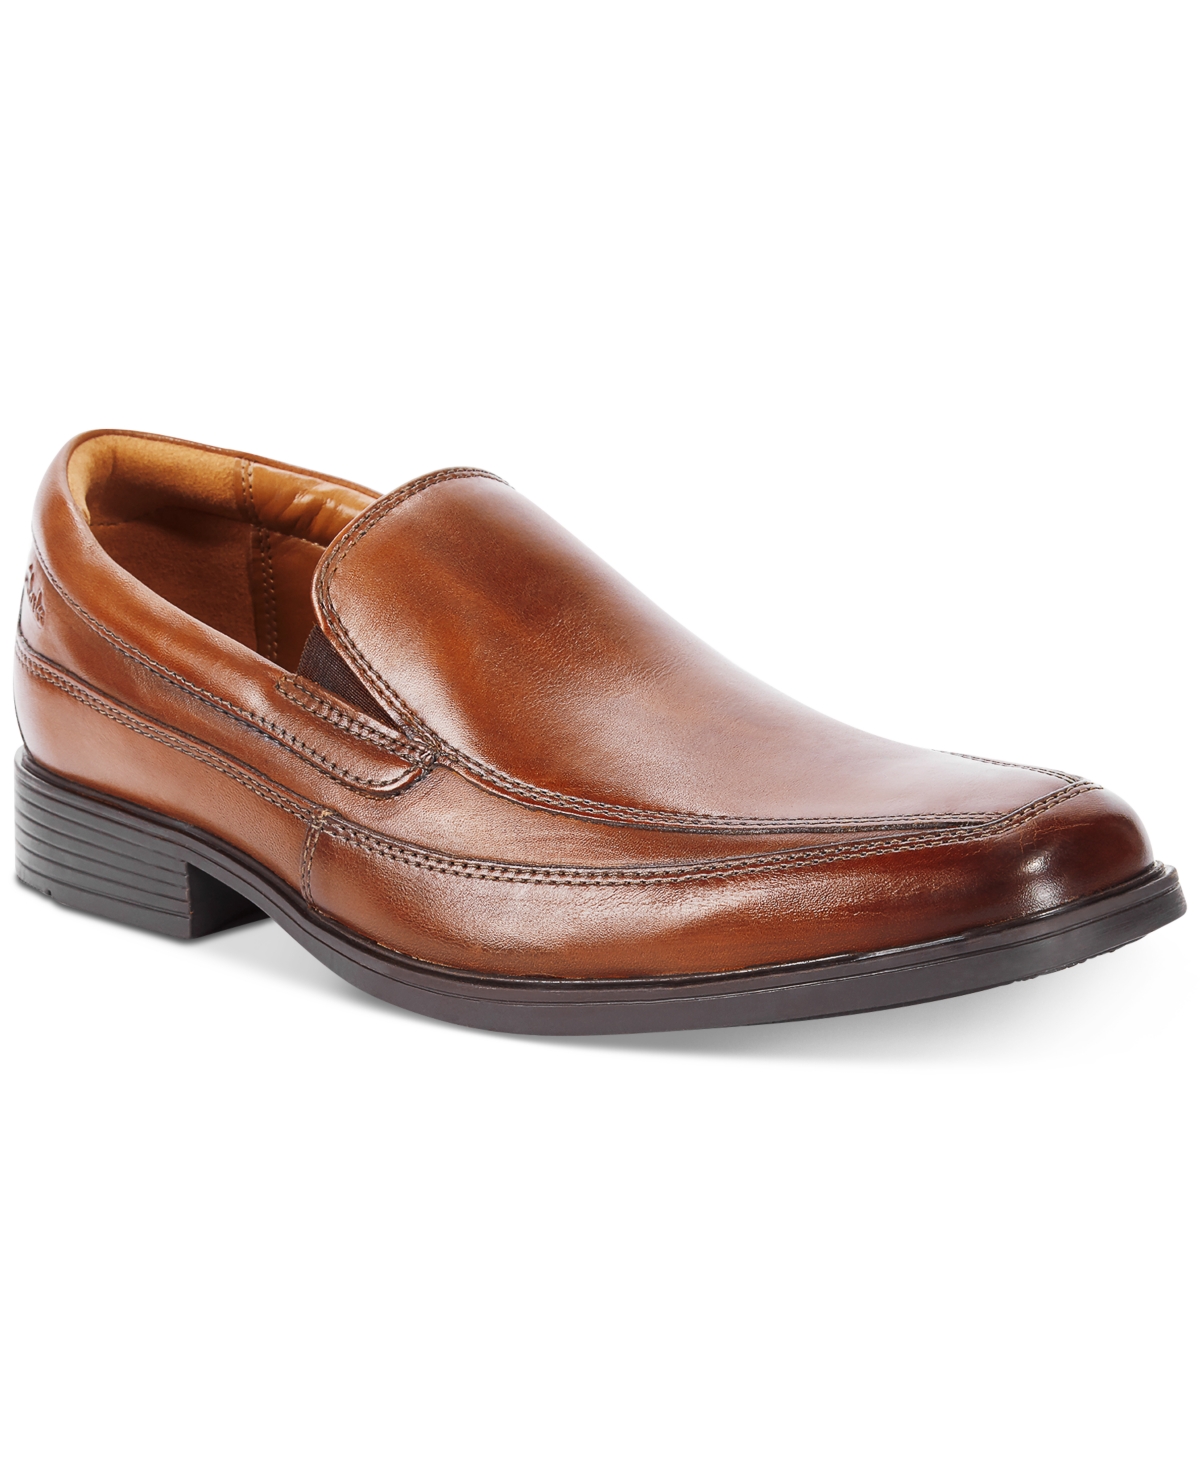 Clarks Men's Tilden Free Slip-On Loafer